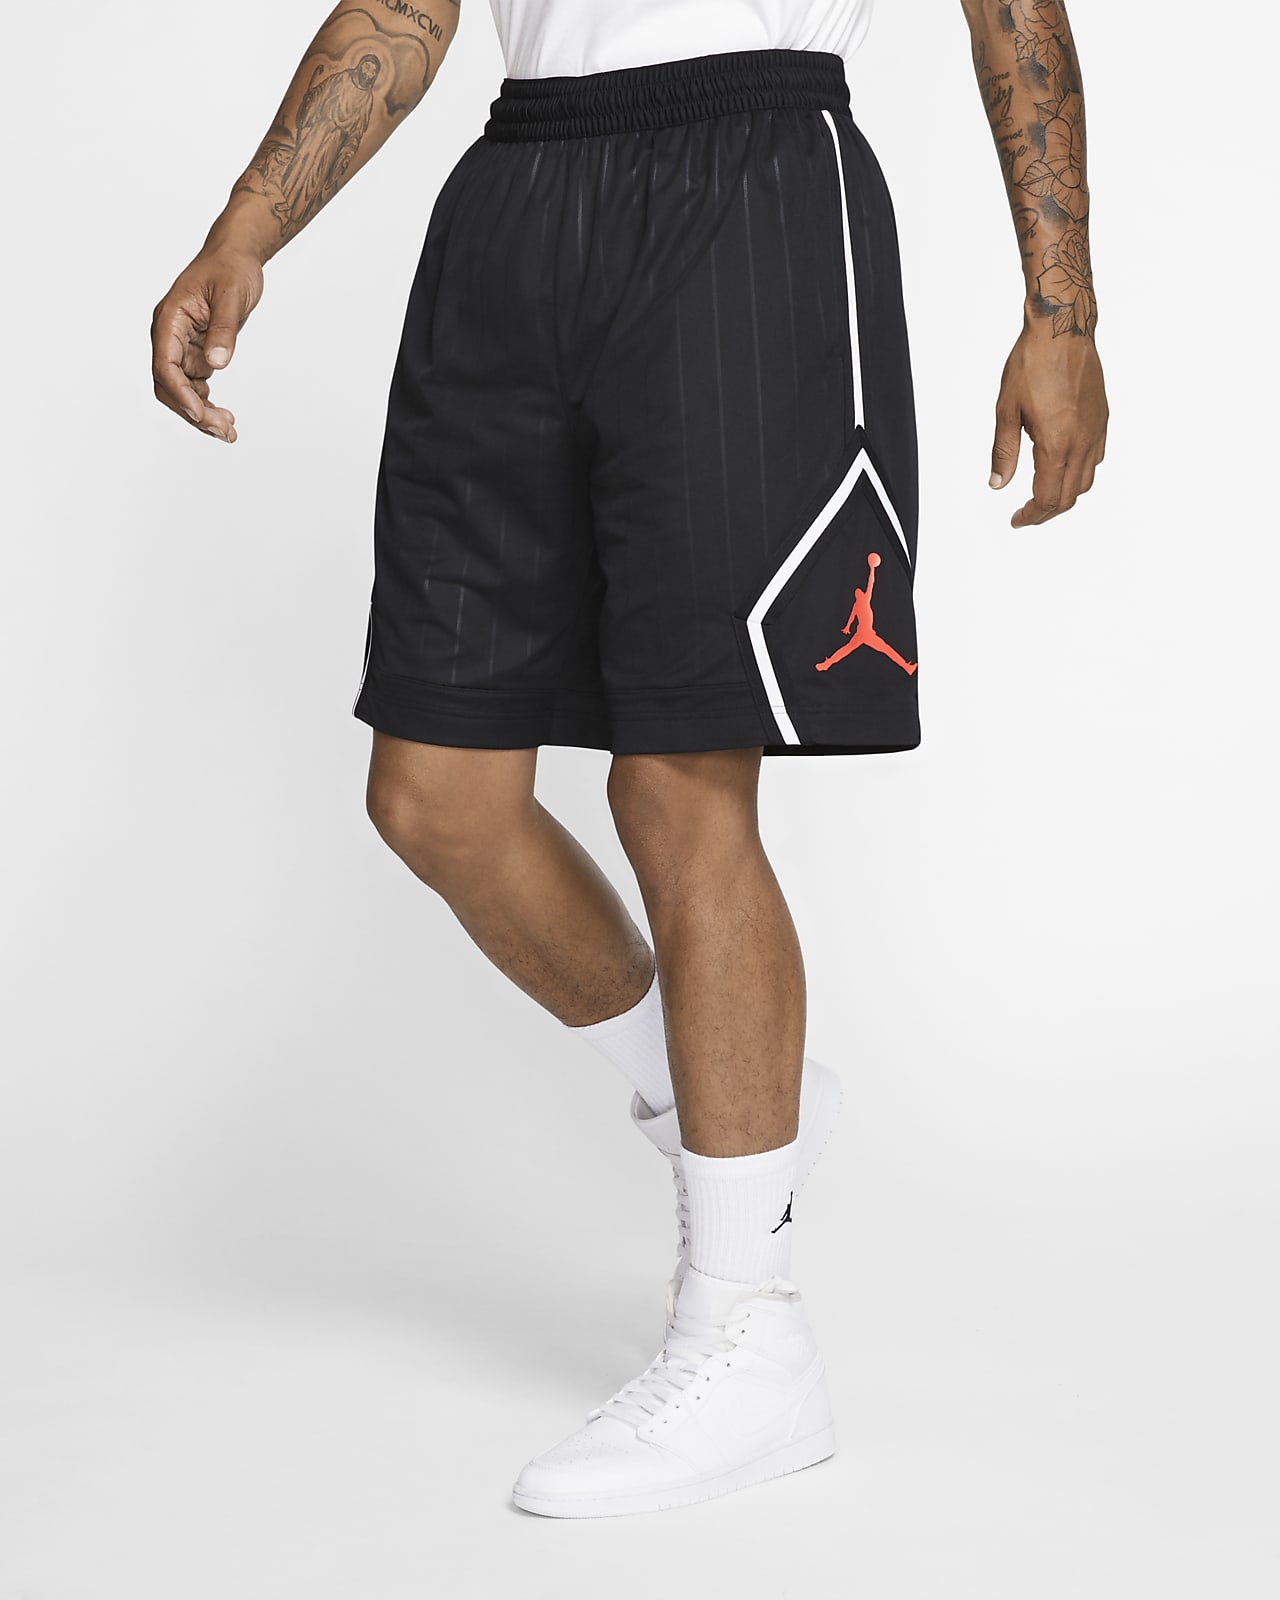 michael jordan compression shorts